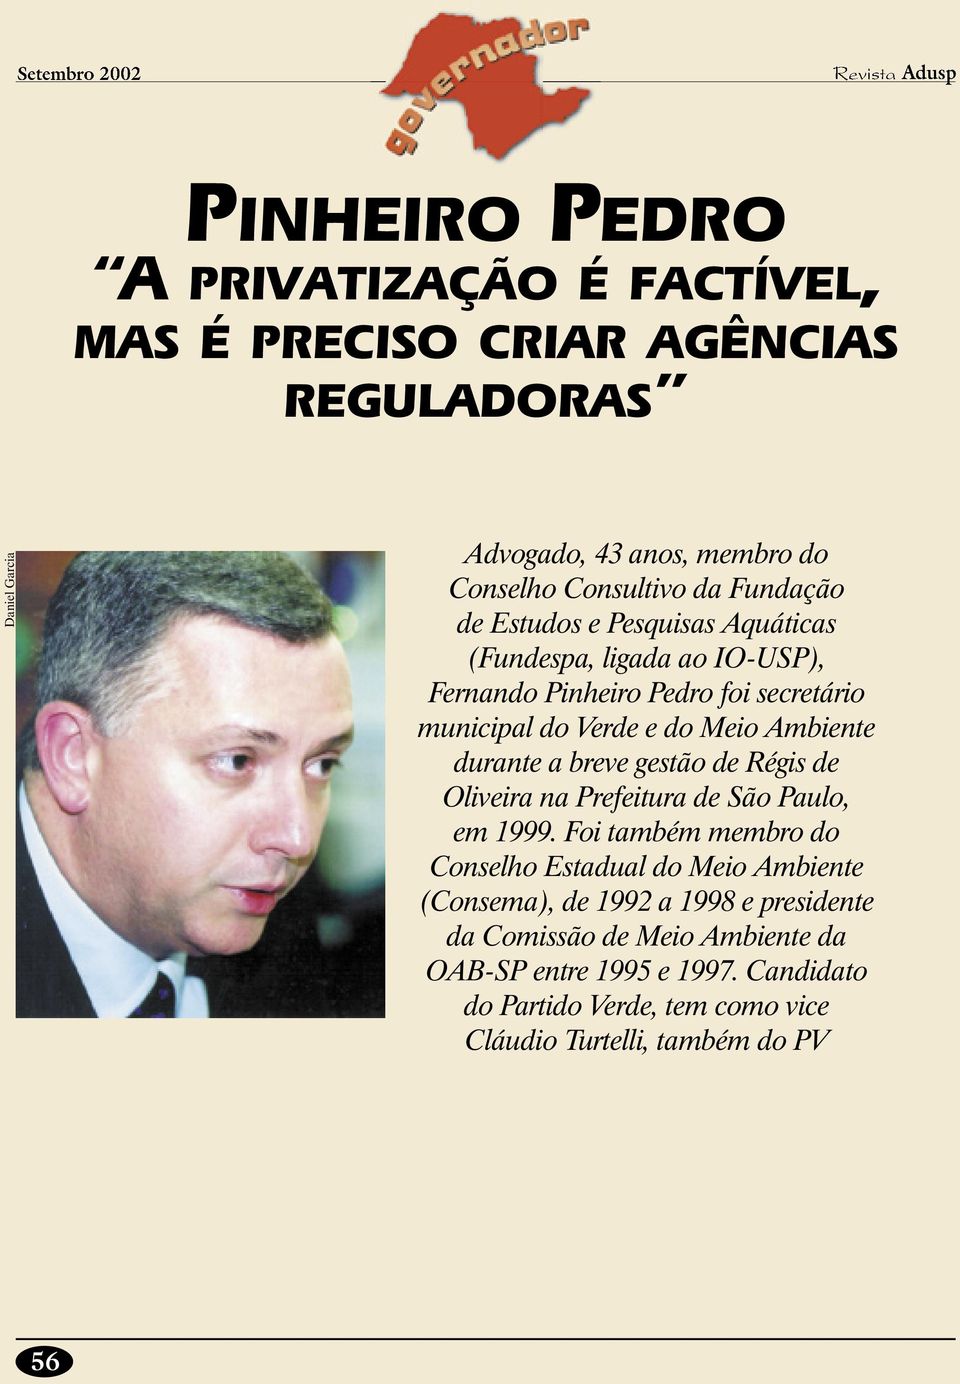 durante a breve gestão de Régis de Oliveira na Prefeitura de São Paulo, em 1999.